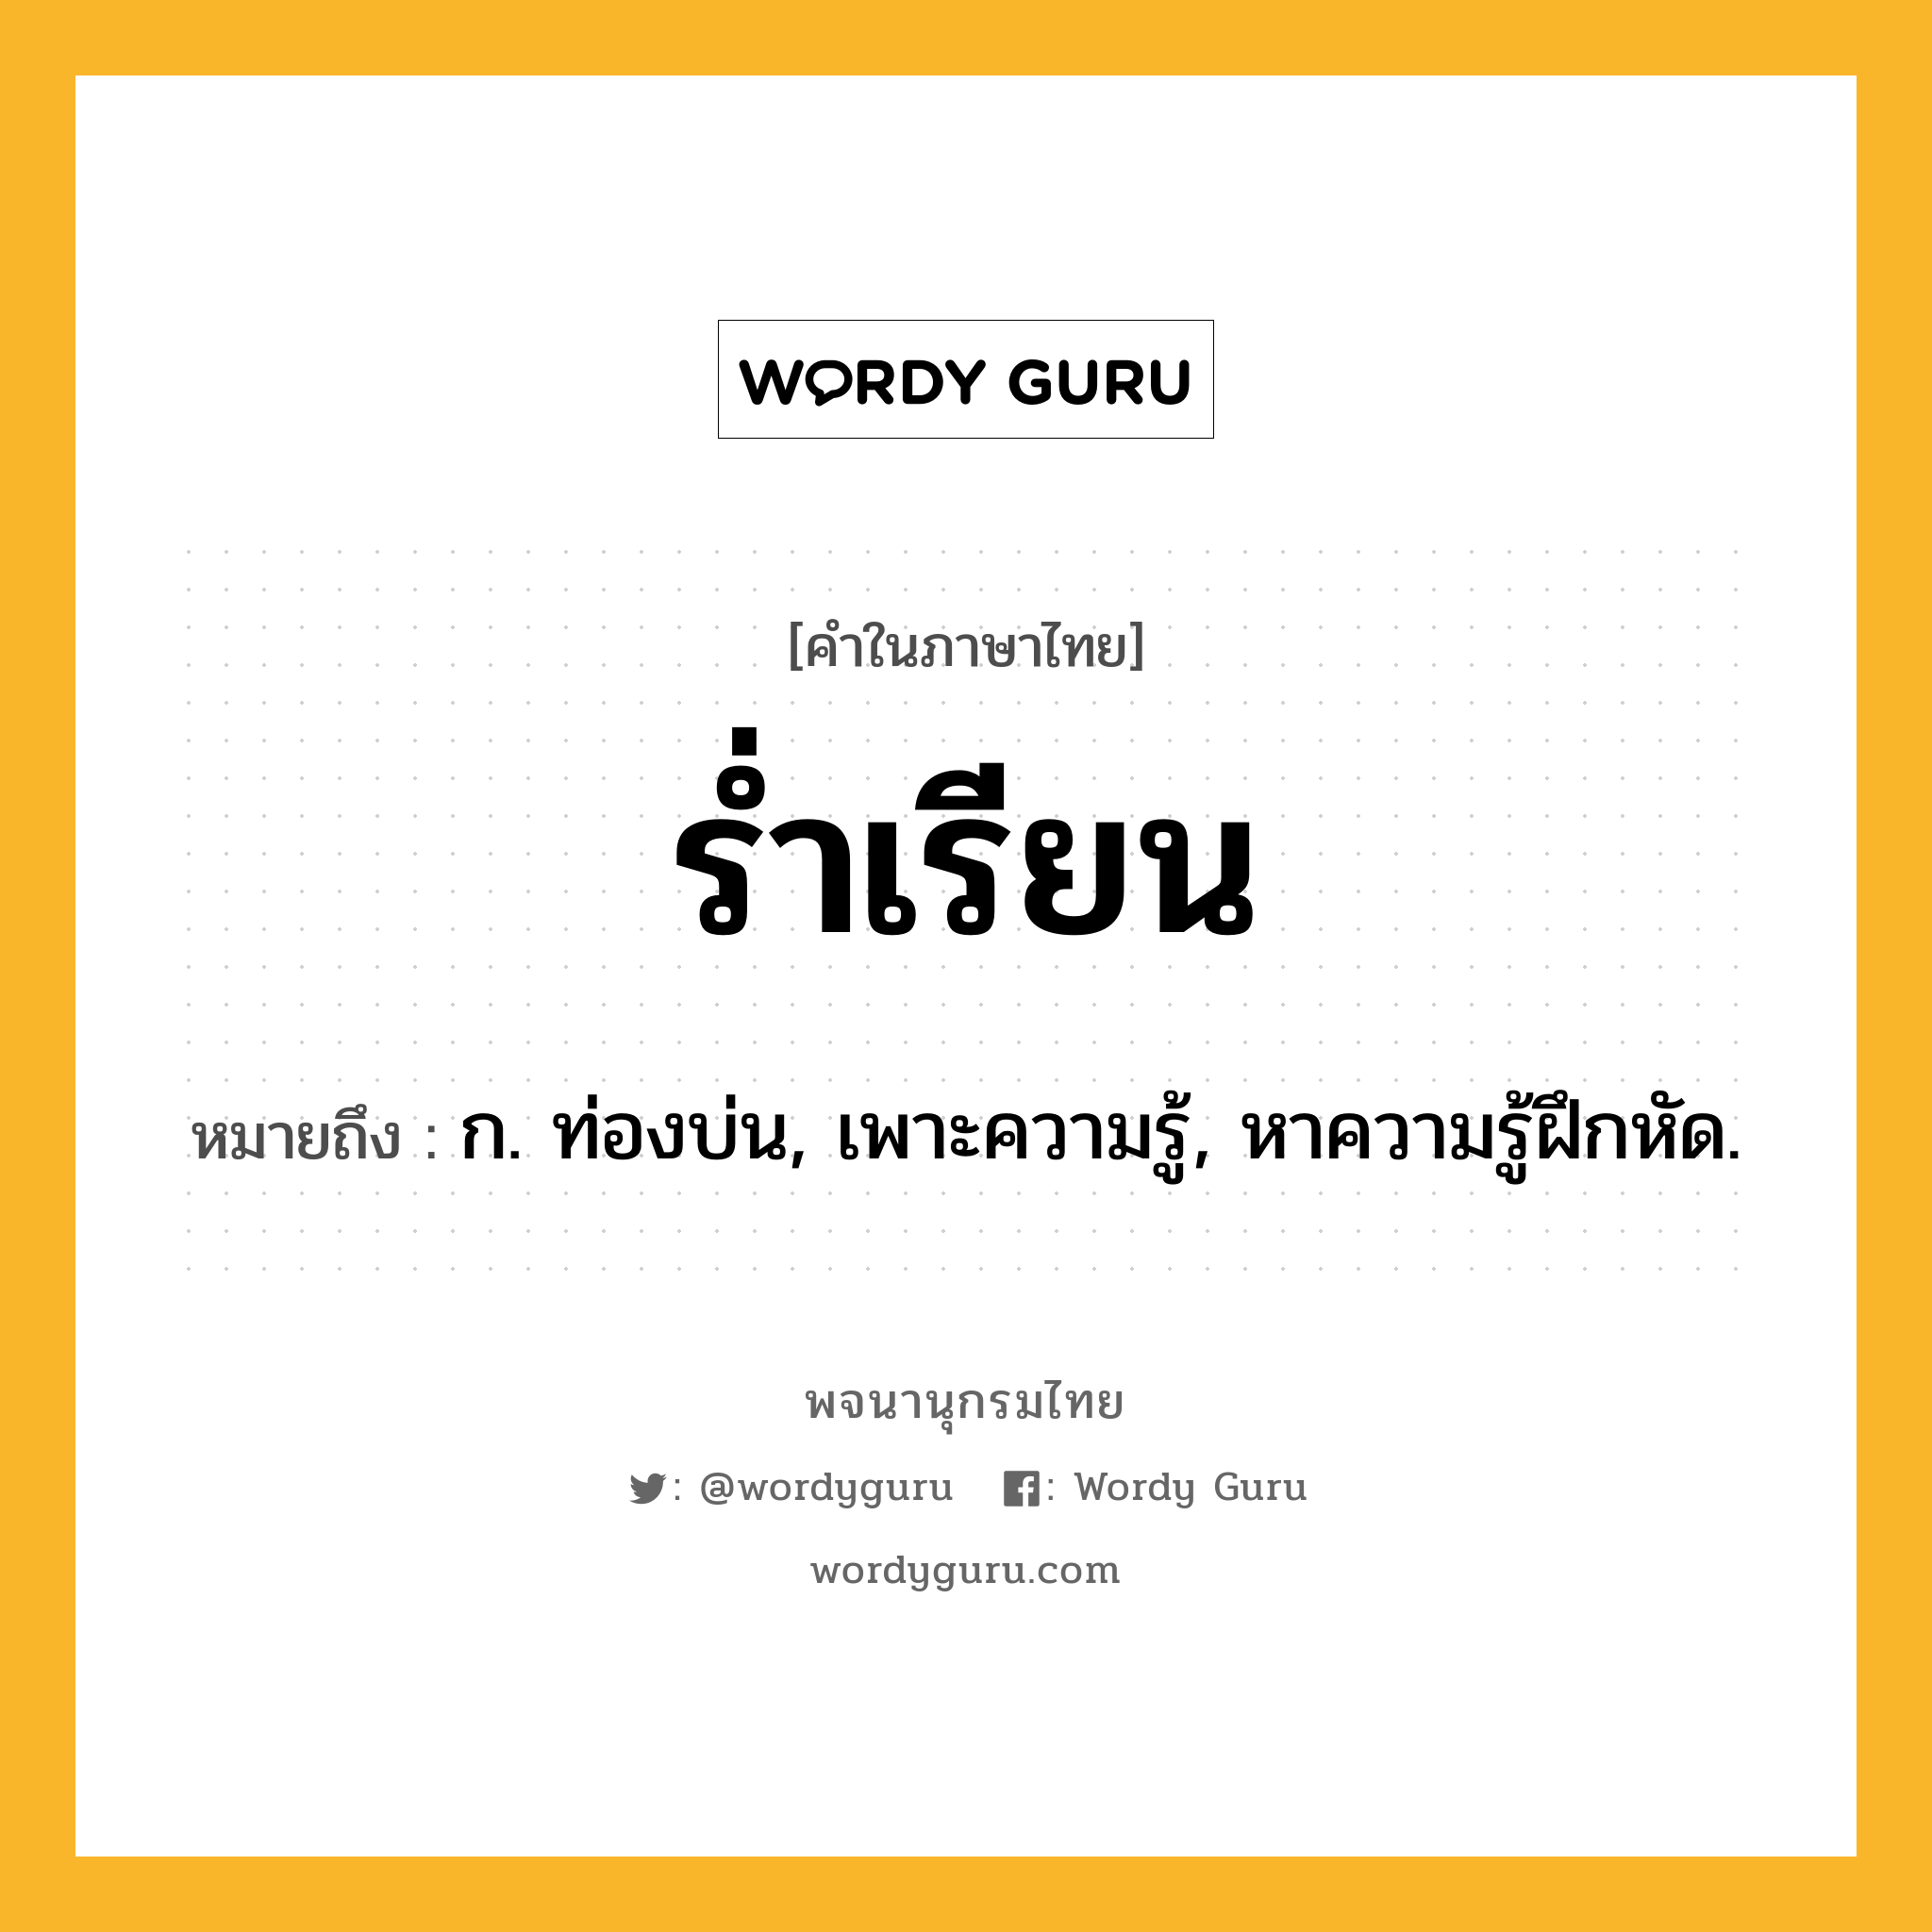 ร่ำเรียน ความหมาย หมายถึงอะไร?, คำในภาษาไทย ร่ำเรียน หมายถึง ก. ท่องบ่น, เพาะความรู้, หาความรู้ฝึกหัด.